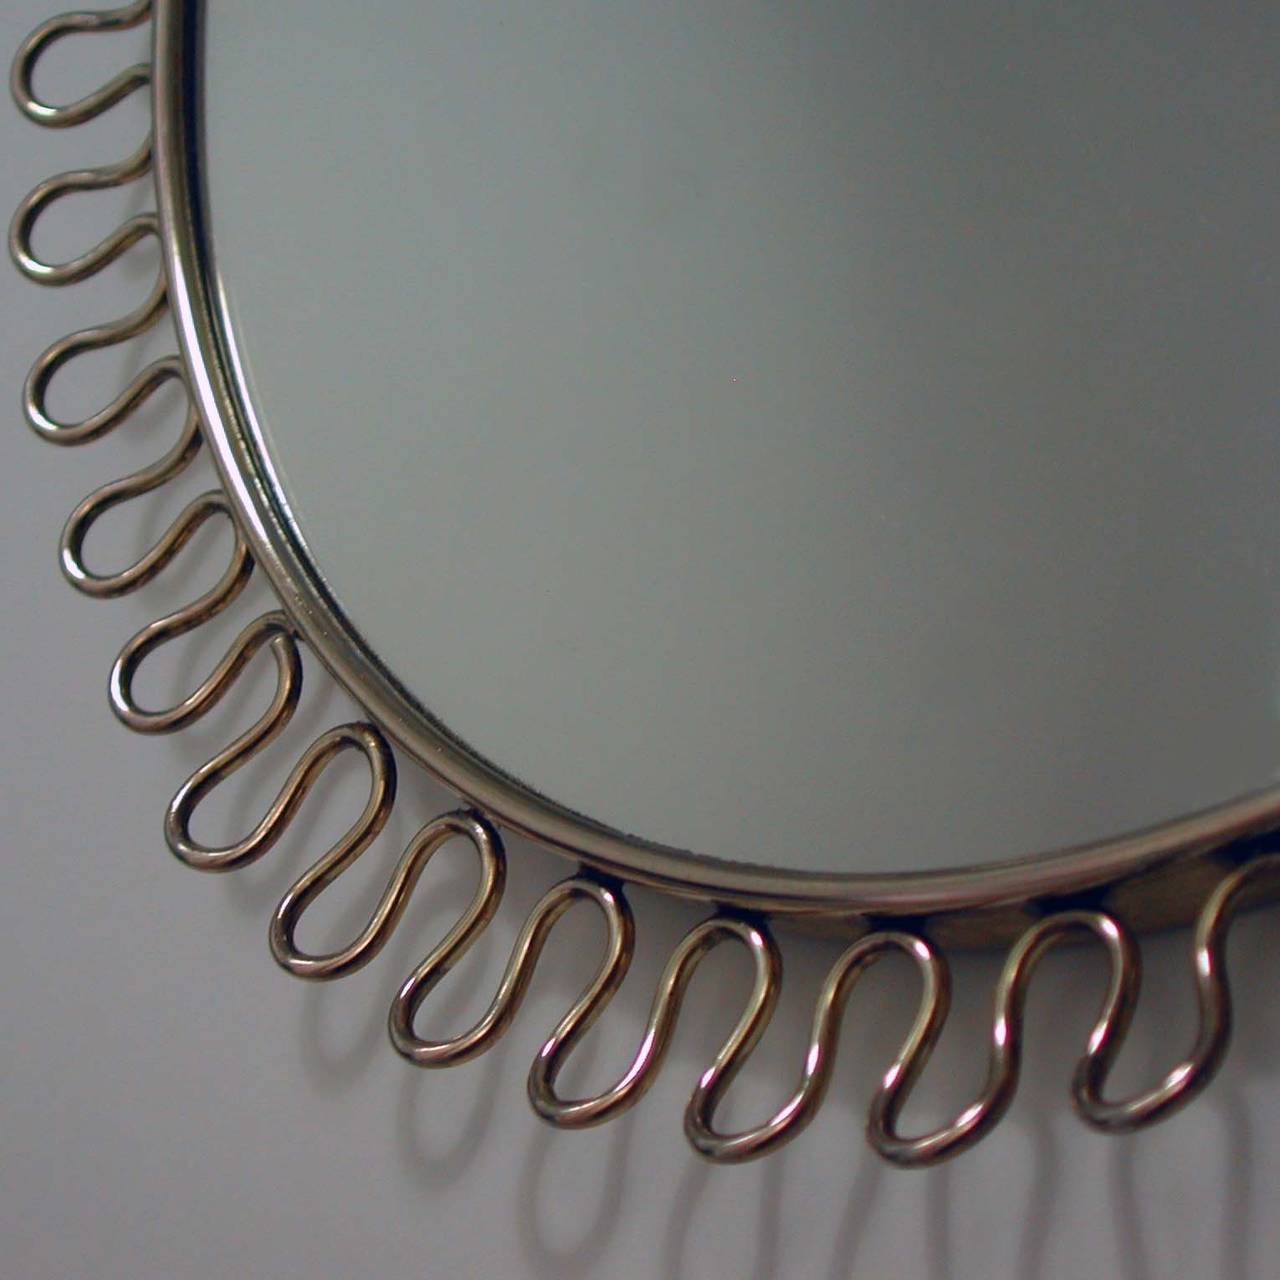 Mid-20th Century Petite Sculptural Brass Loop Mirror attr. to Josef Frank for Svenskt Tenn, 1950s